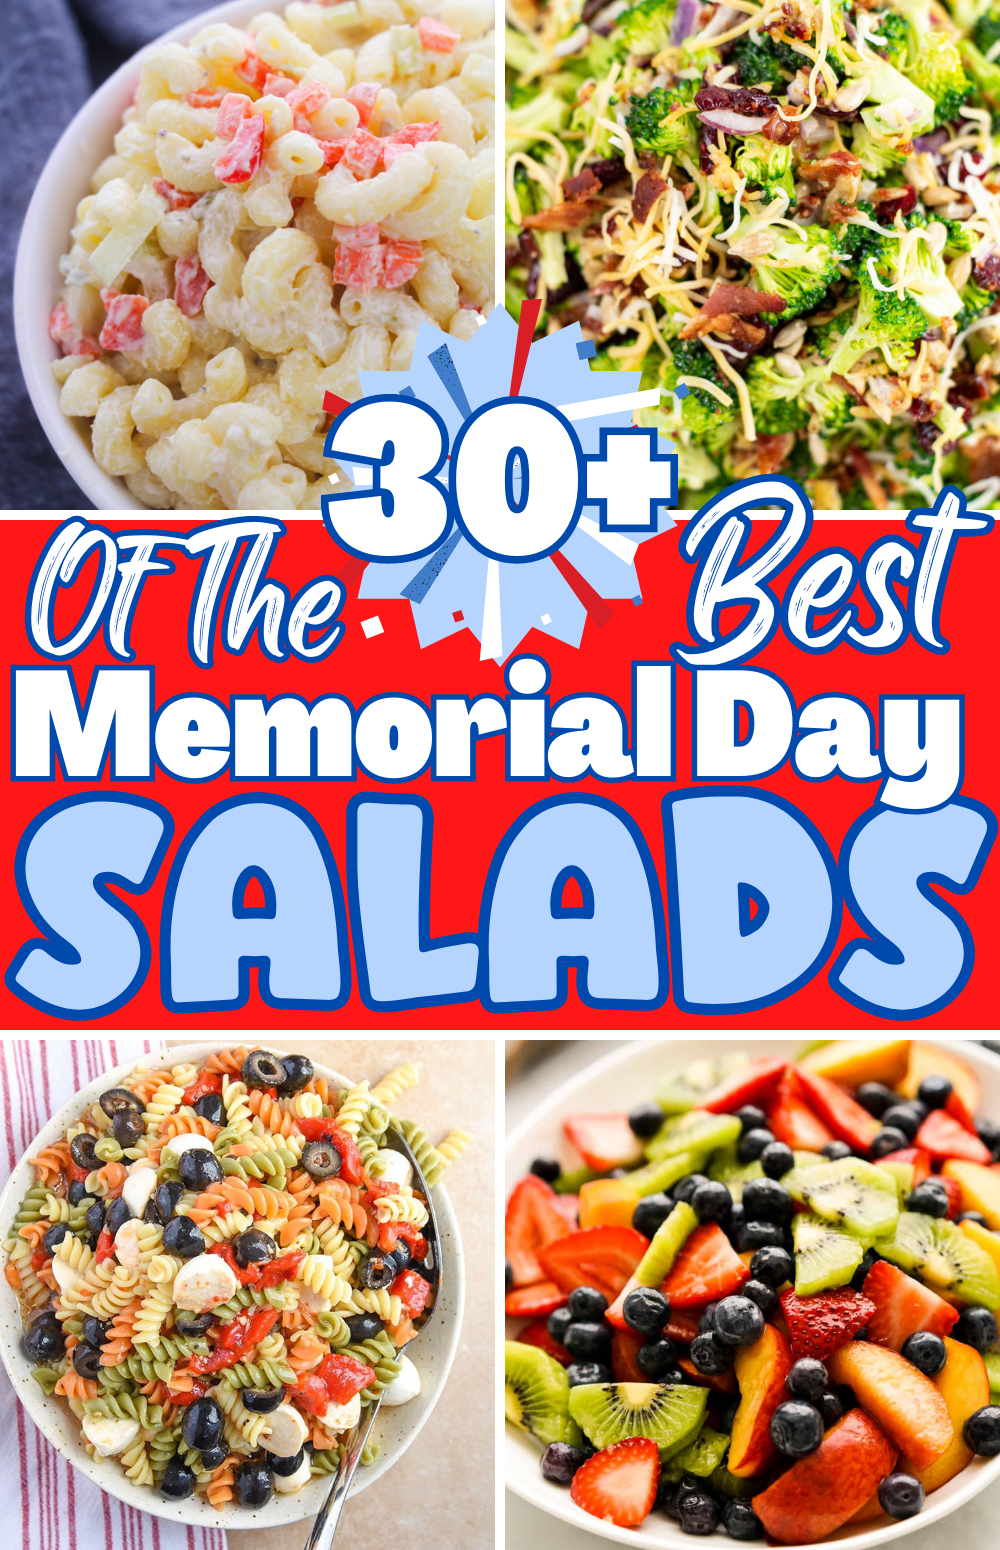 Memorial Day Salad Recipes HD Wallpaper